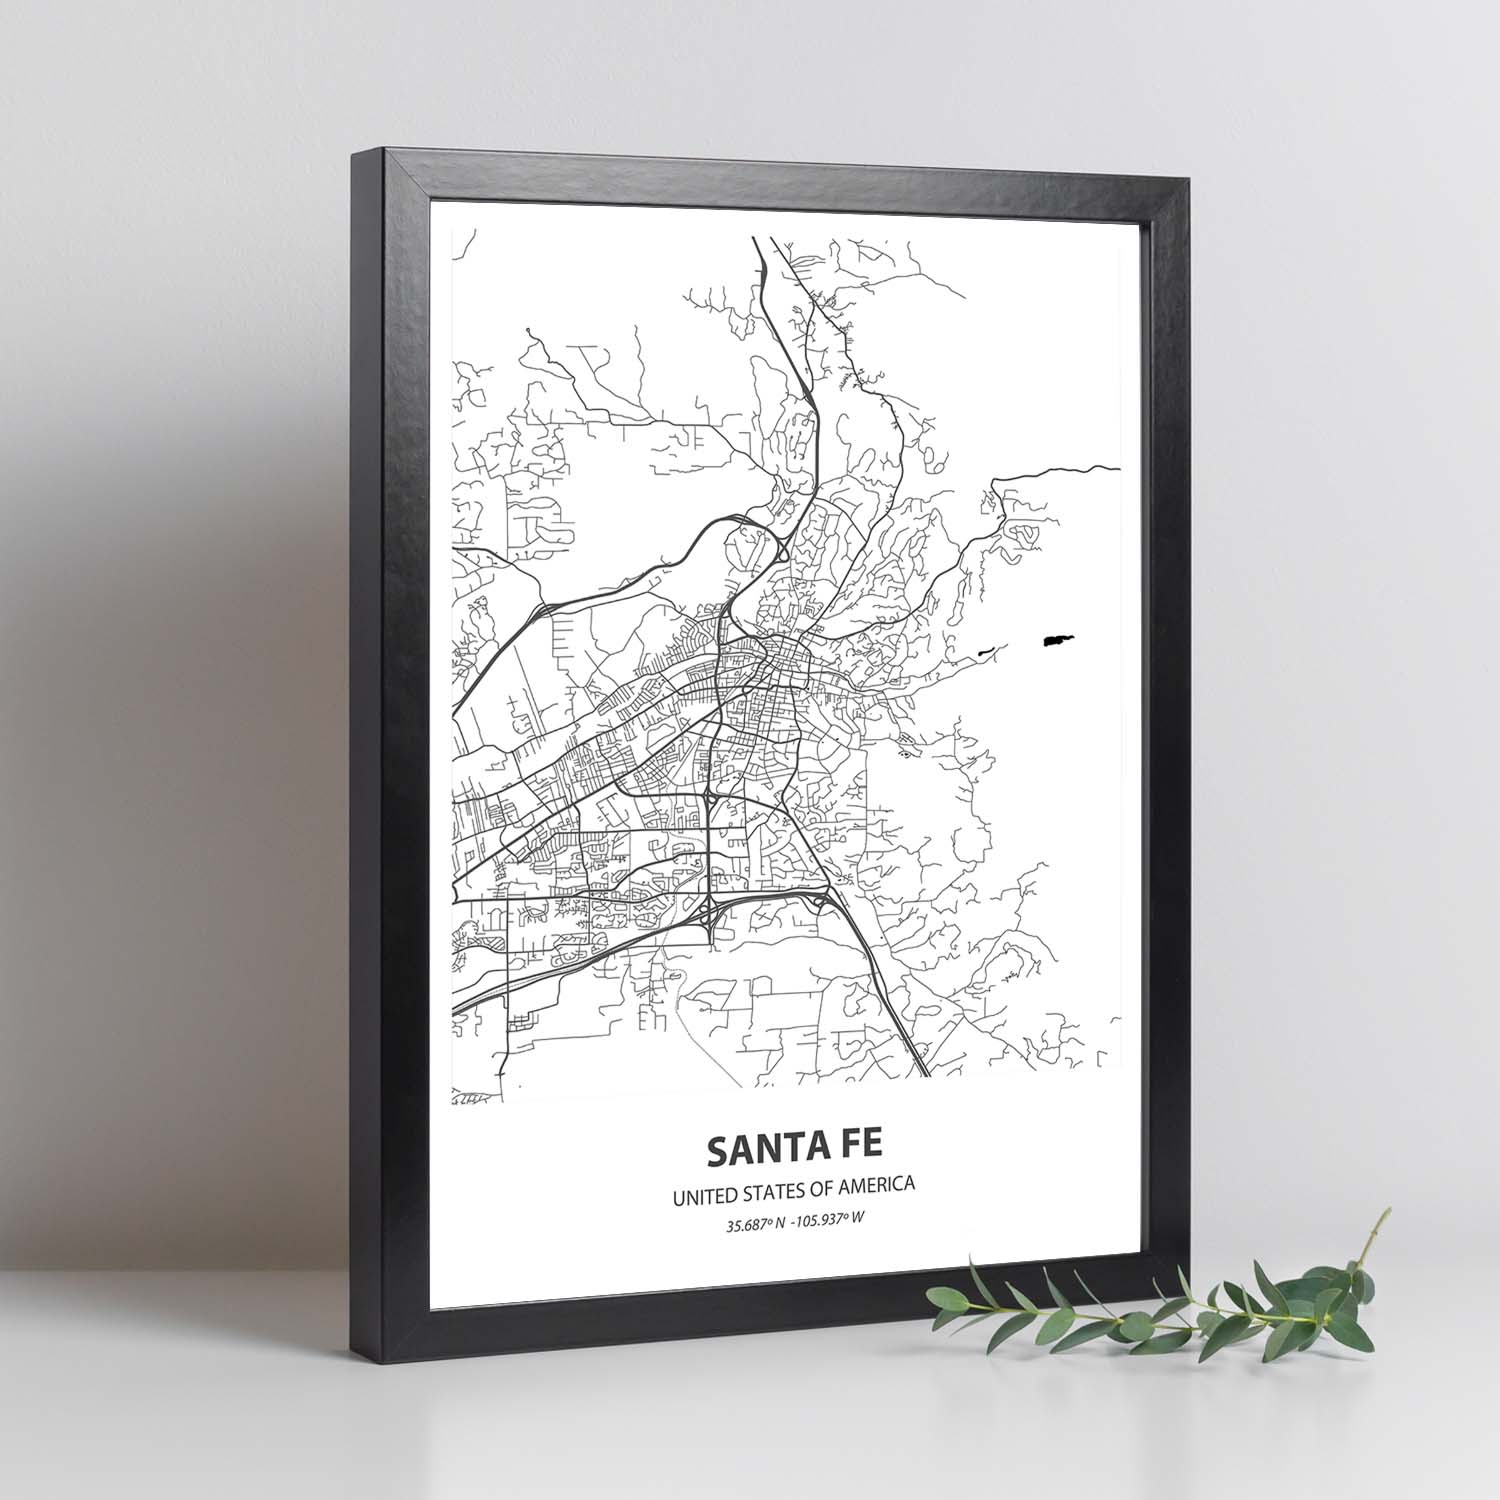 Poster con mapa de Santa Fe - USA. Láminas de ciudades de Estados Unidos con mares y ríos en color negro.-Artwork-Nacnic-Nacnic Estudio SL